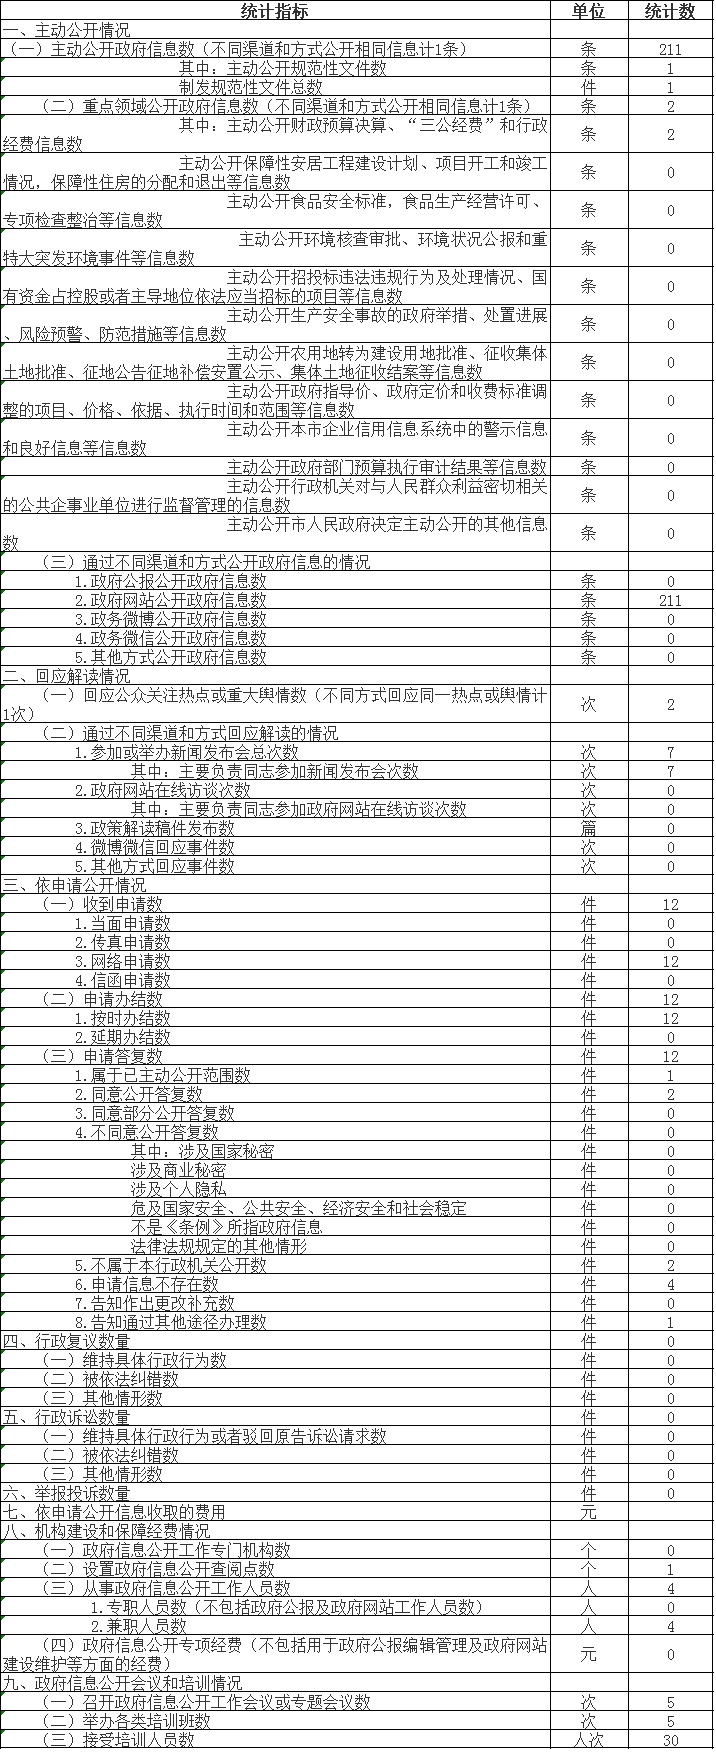 北京市中醫管理局政府信息公開情況統計表